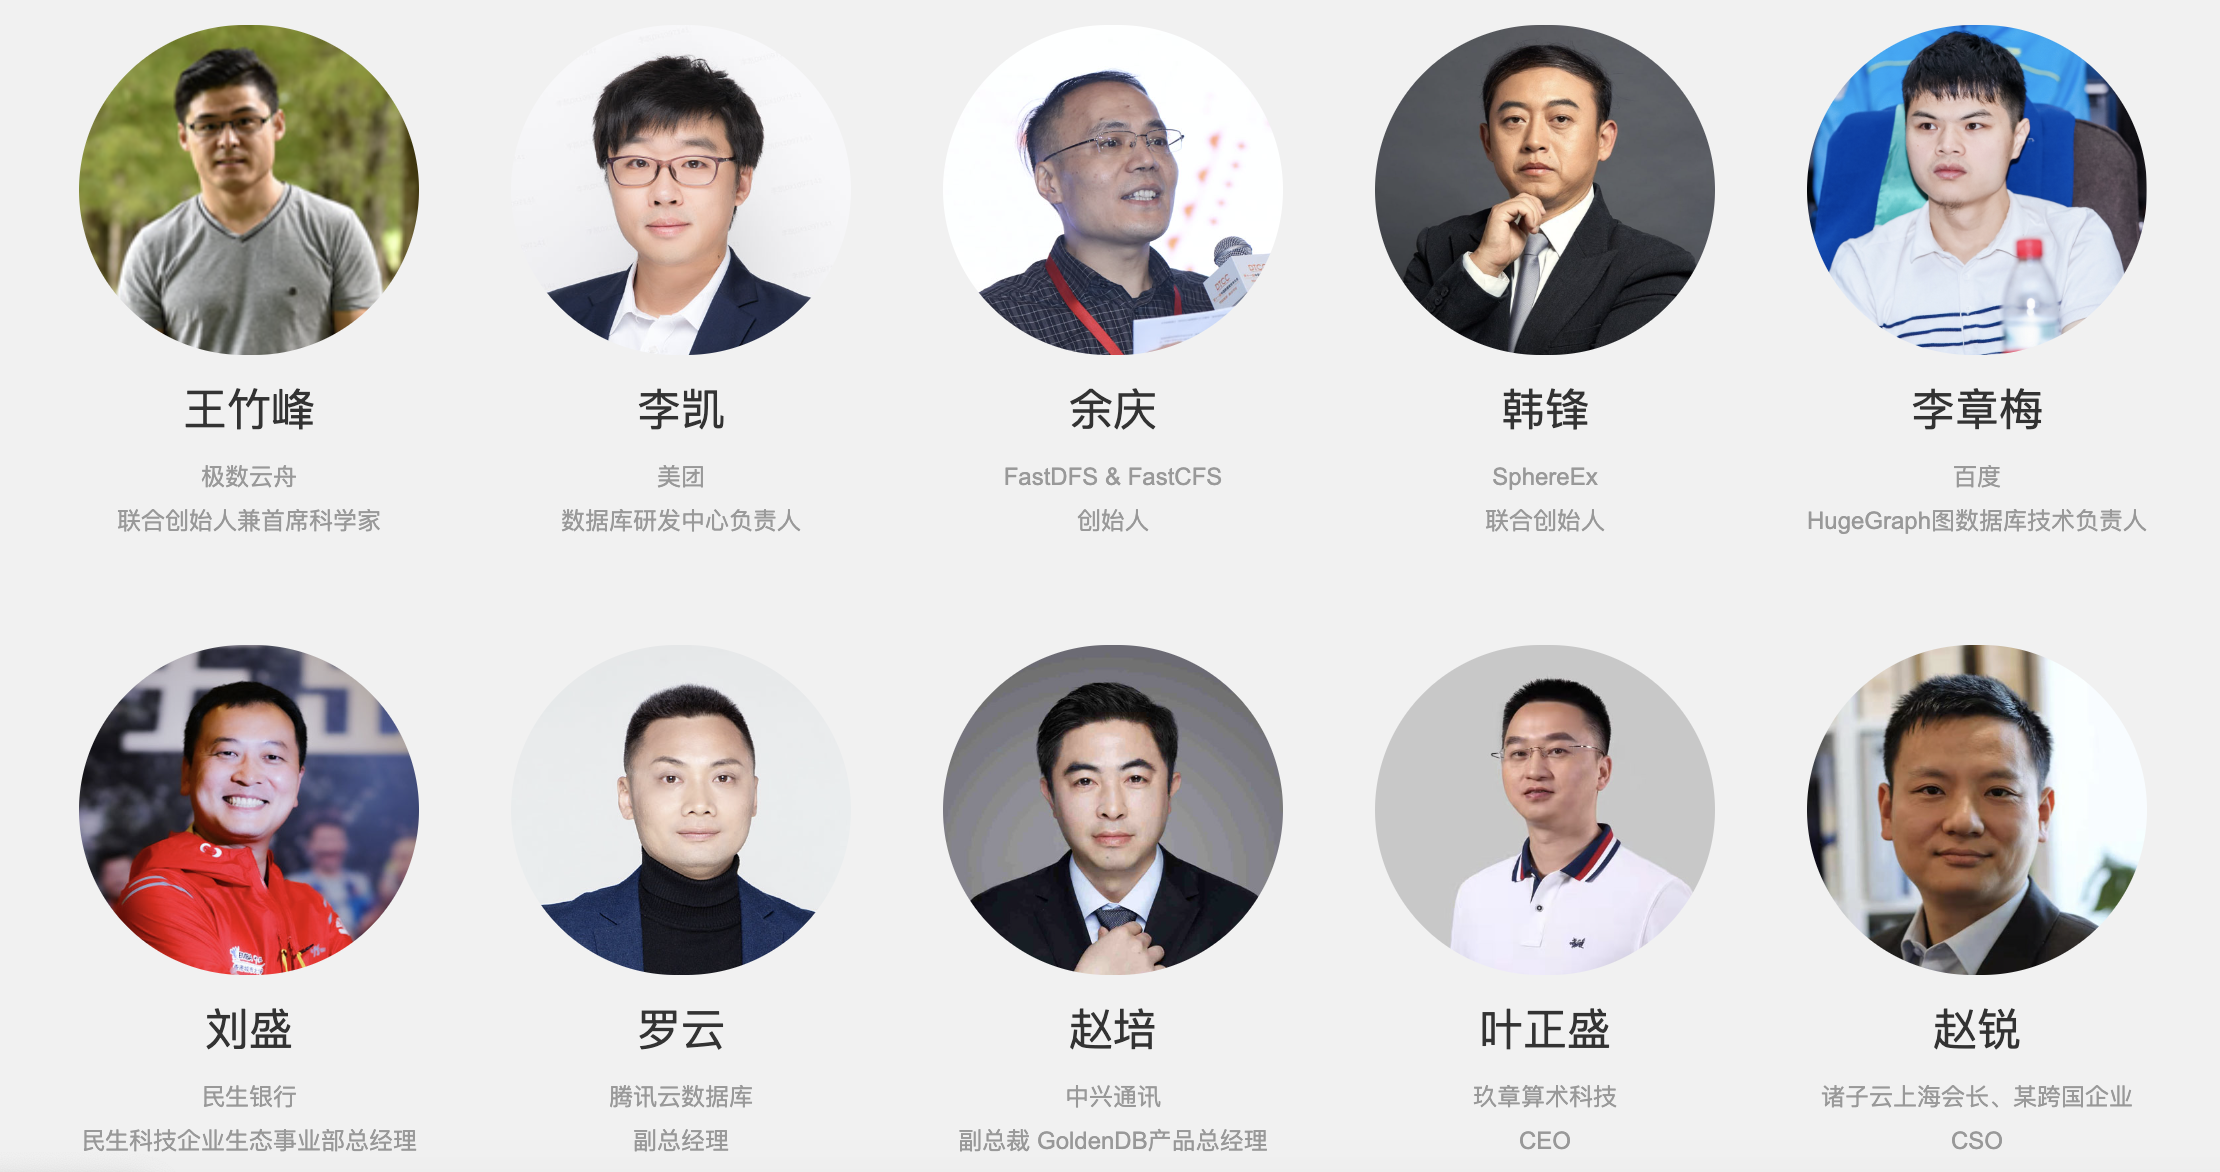 第14届中国数据库技术大会